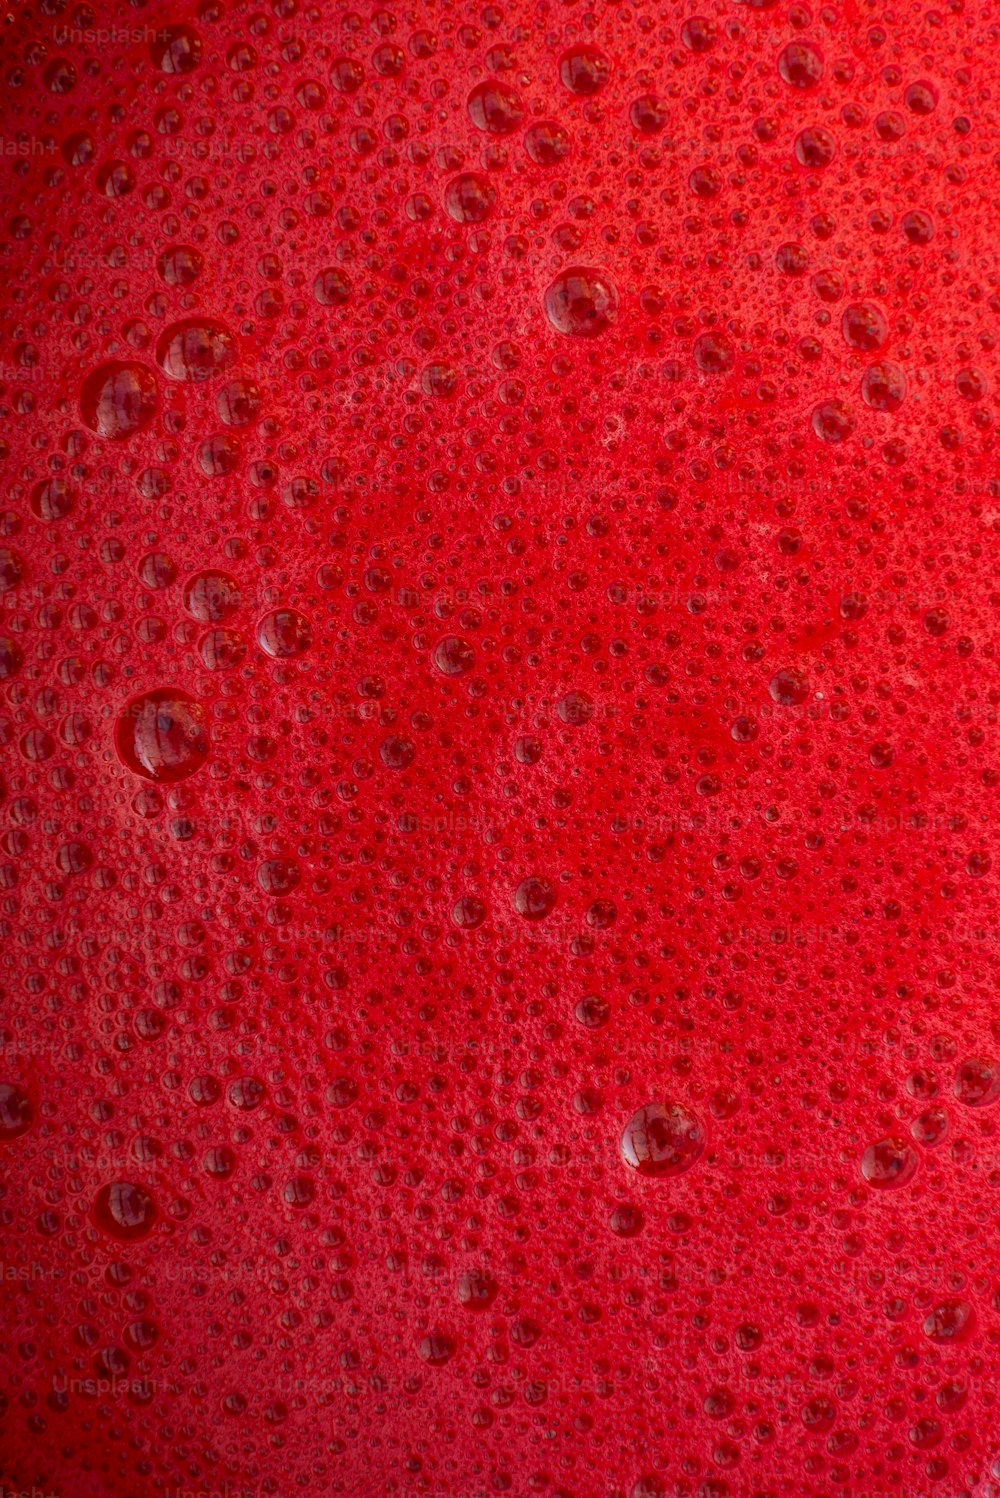 un primo piano di una sostanza rossa con gocce d'acqua